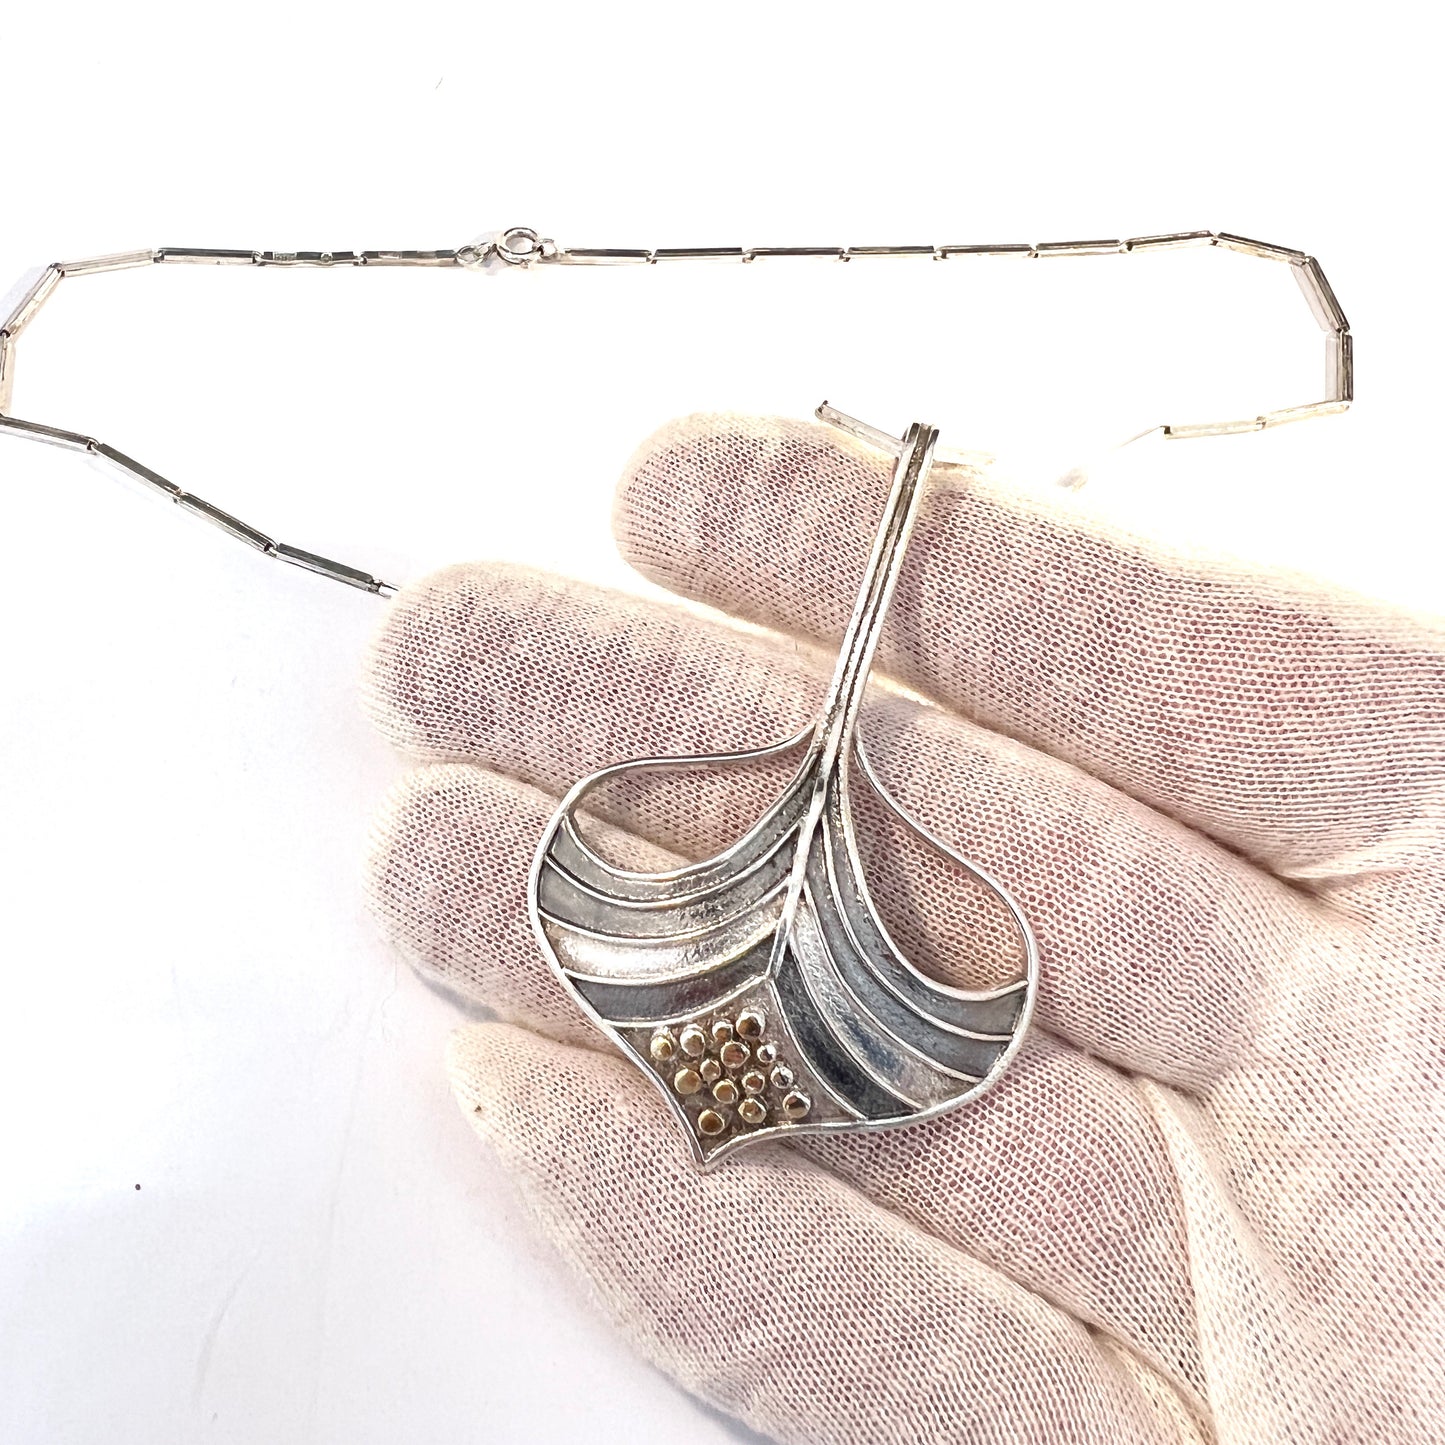 B Holmgren, Sweden 1989. Vintage Large Sterling Silver Pendant Necklace.